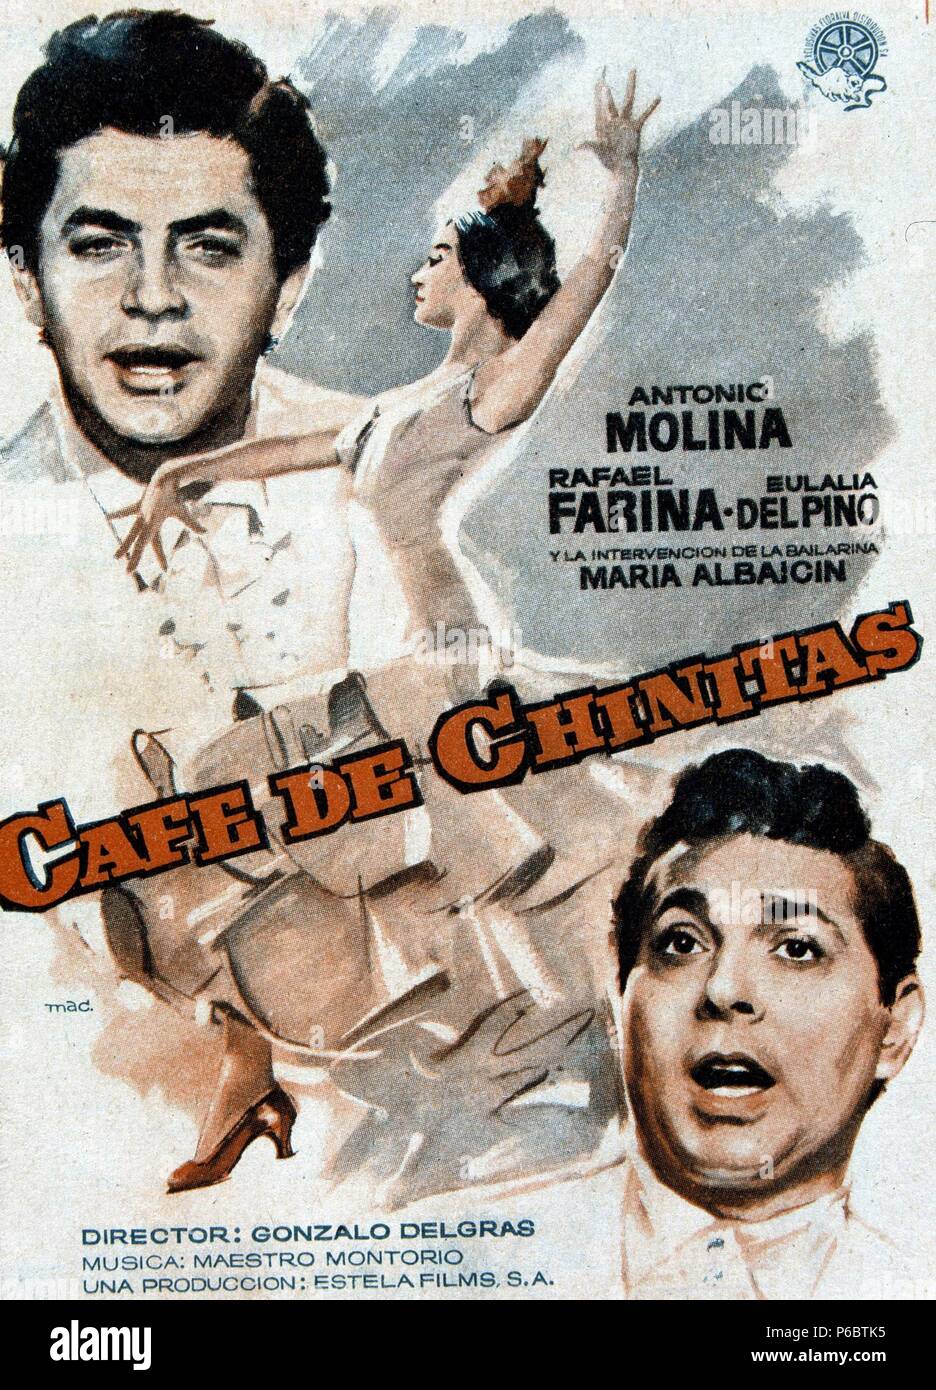 PELICULA : CAFE DE CHINITAS , 1960. DIRECTOR , GONZALO DELGRAS. ACTORES , ANTONIO MOLINA , RAFAEL FARINA. Stock Photo